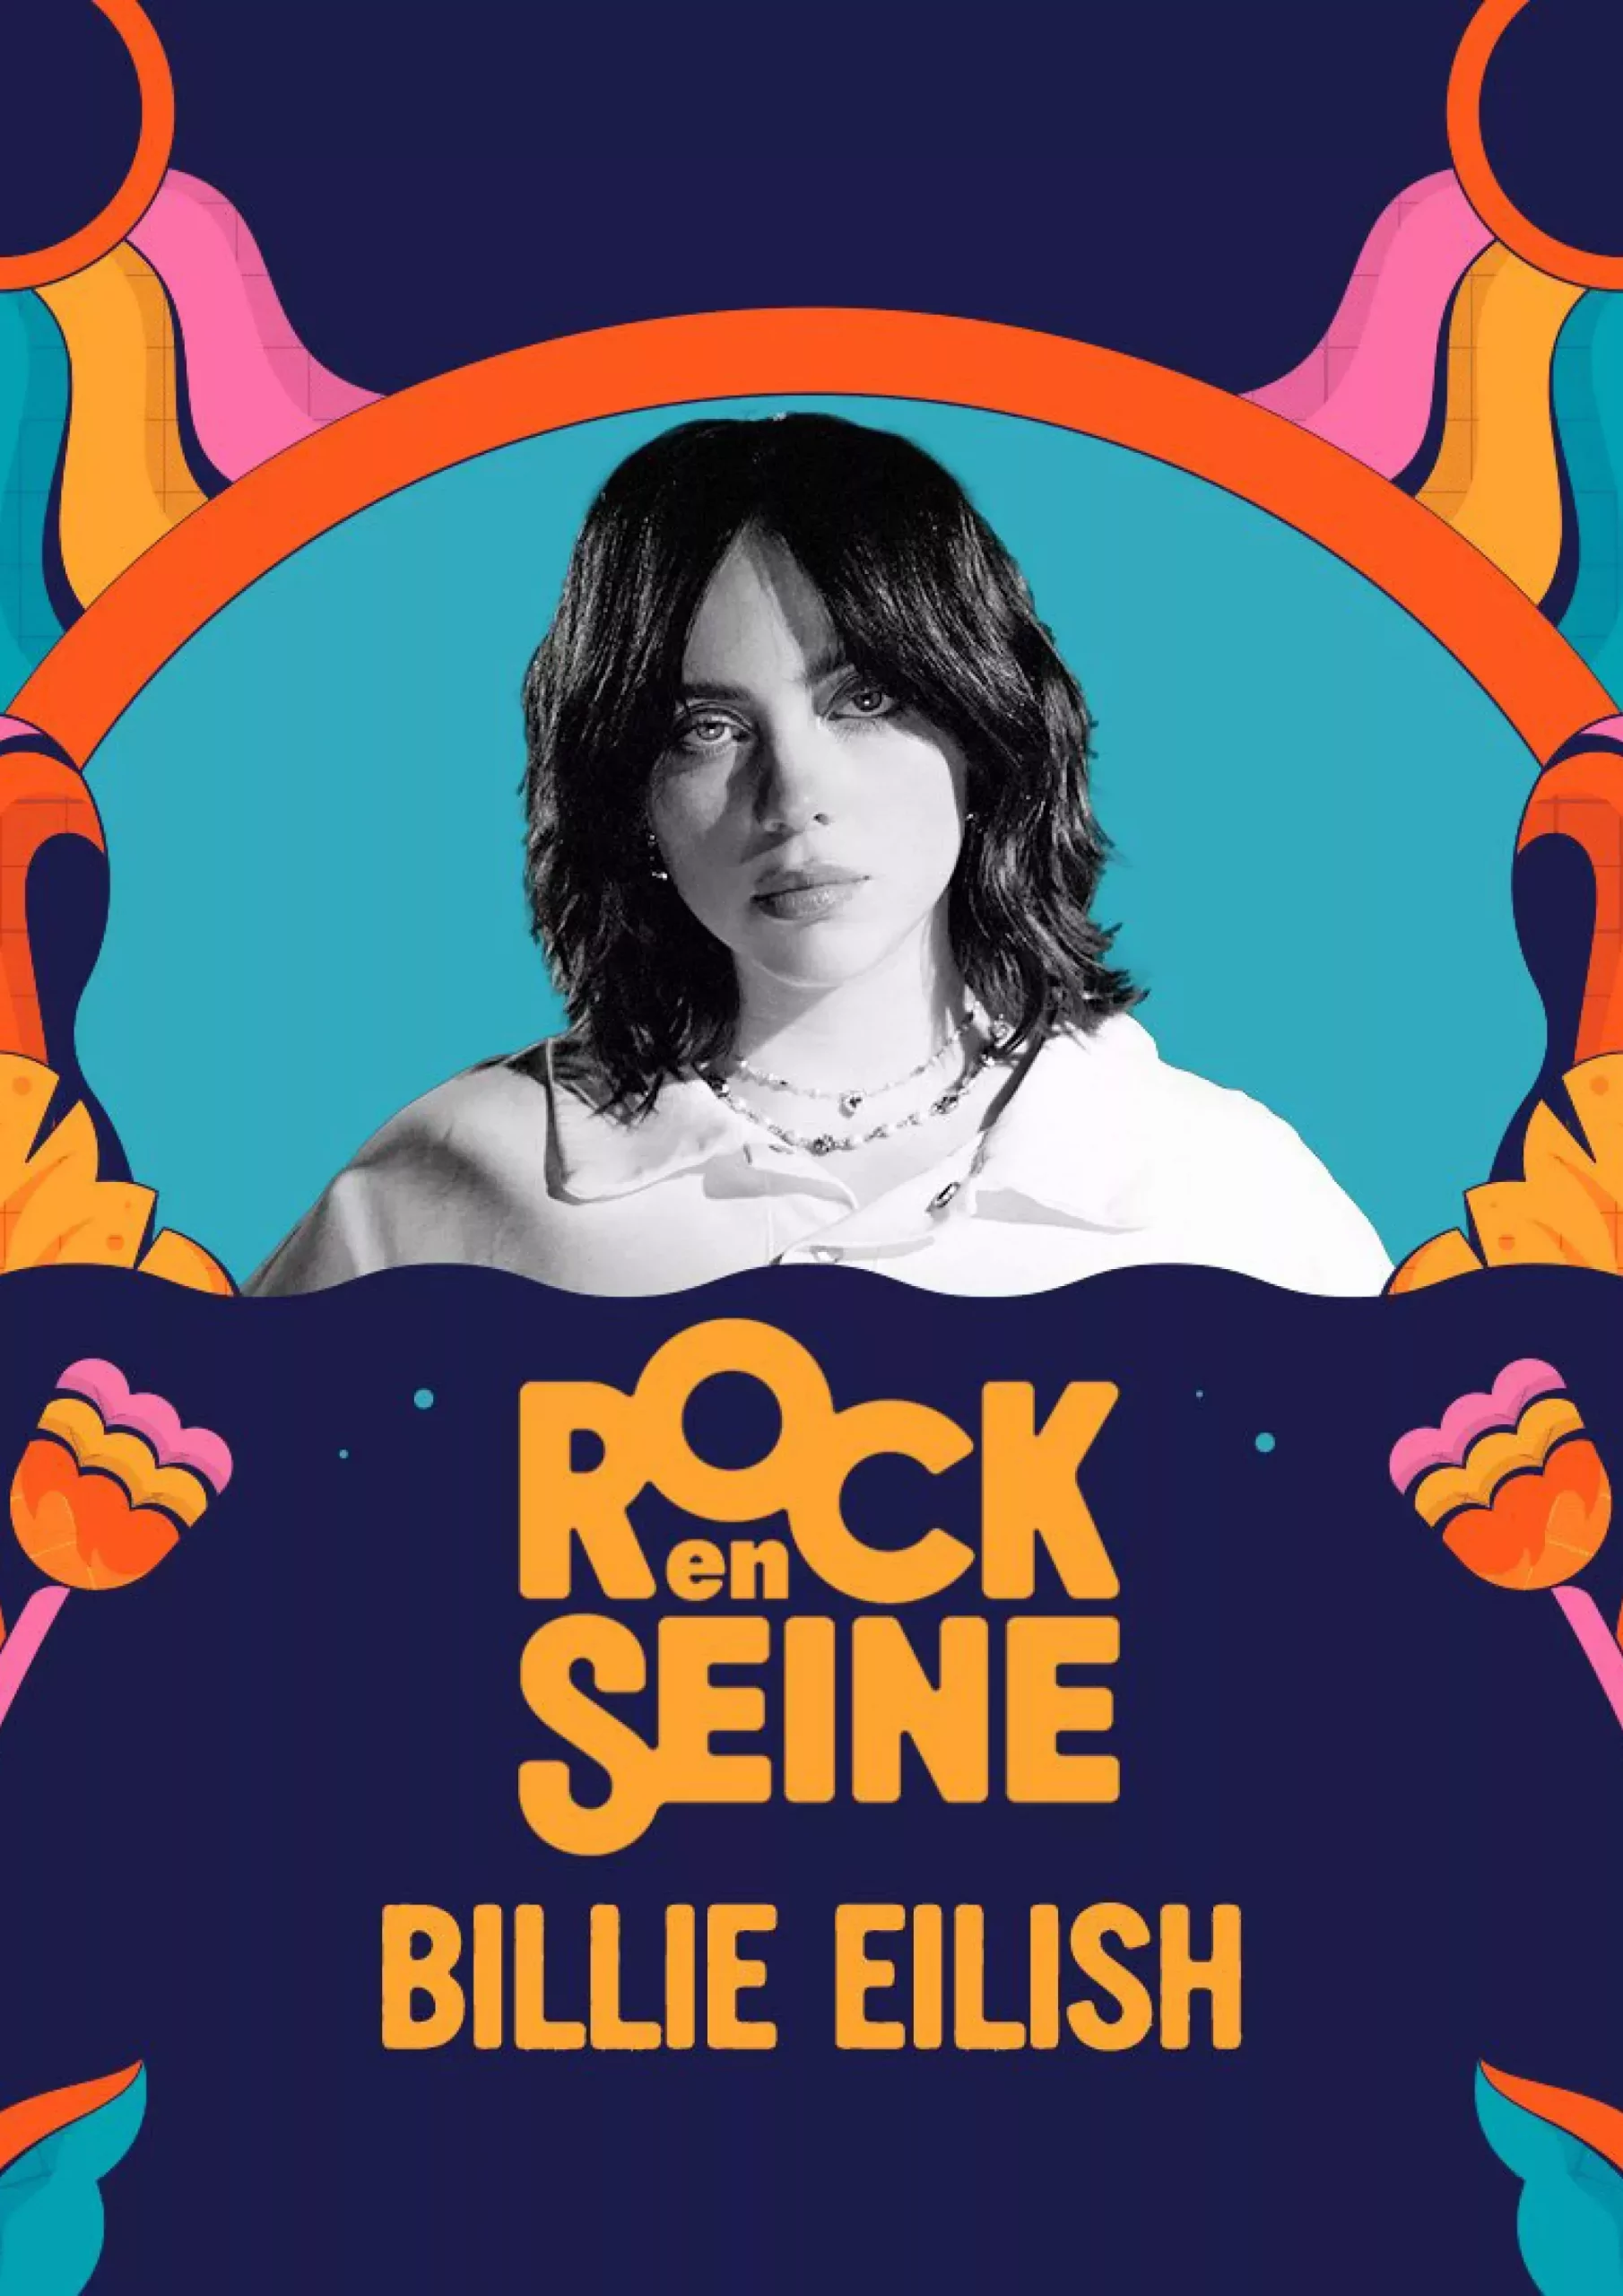 Billie Eilish à Rock en Seine